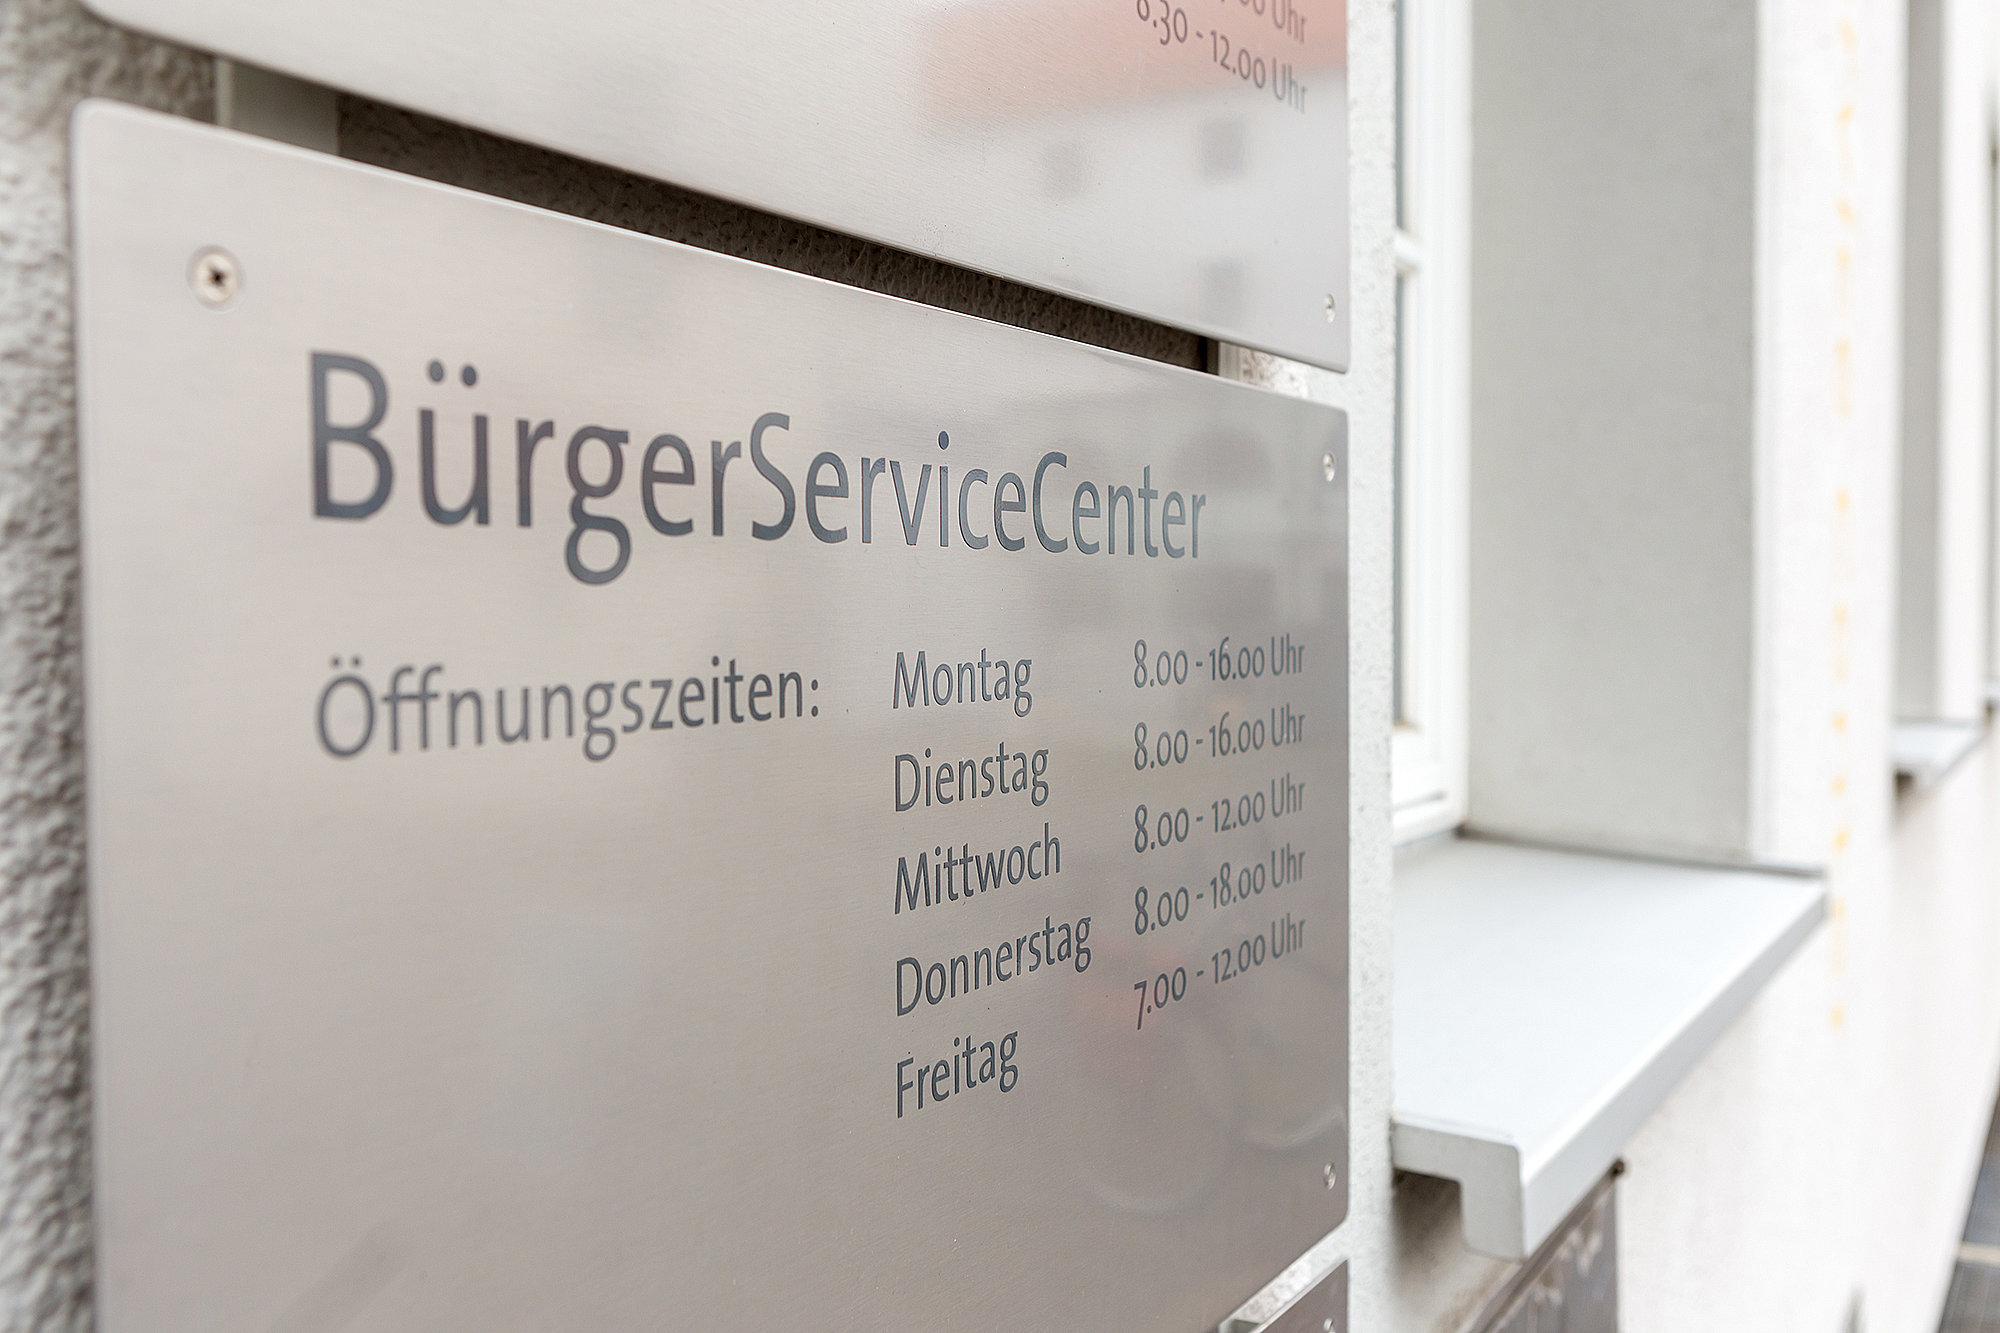 The Citizen's Service Center. photo: Philipp Röger für die Stadt Günzburg